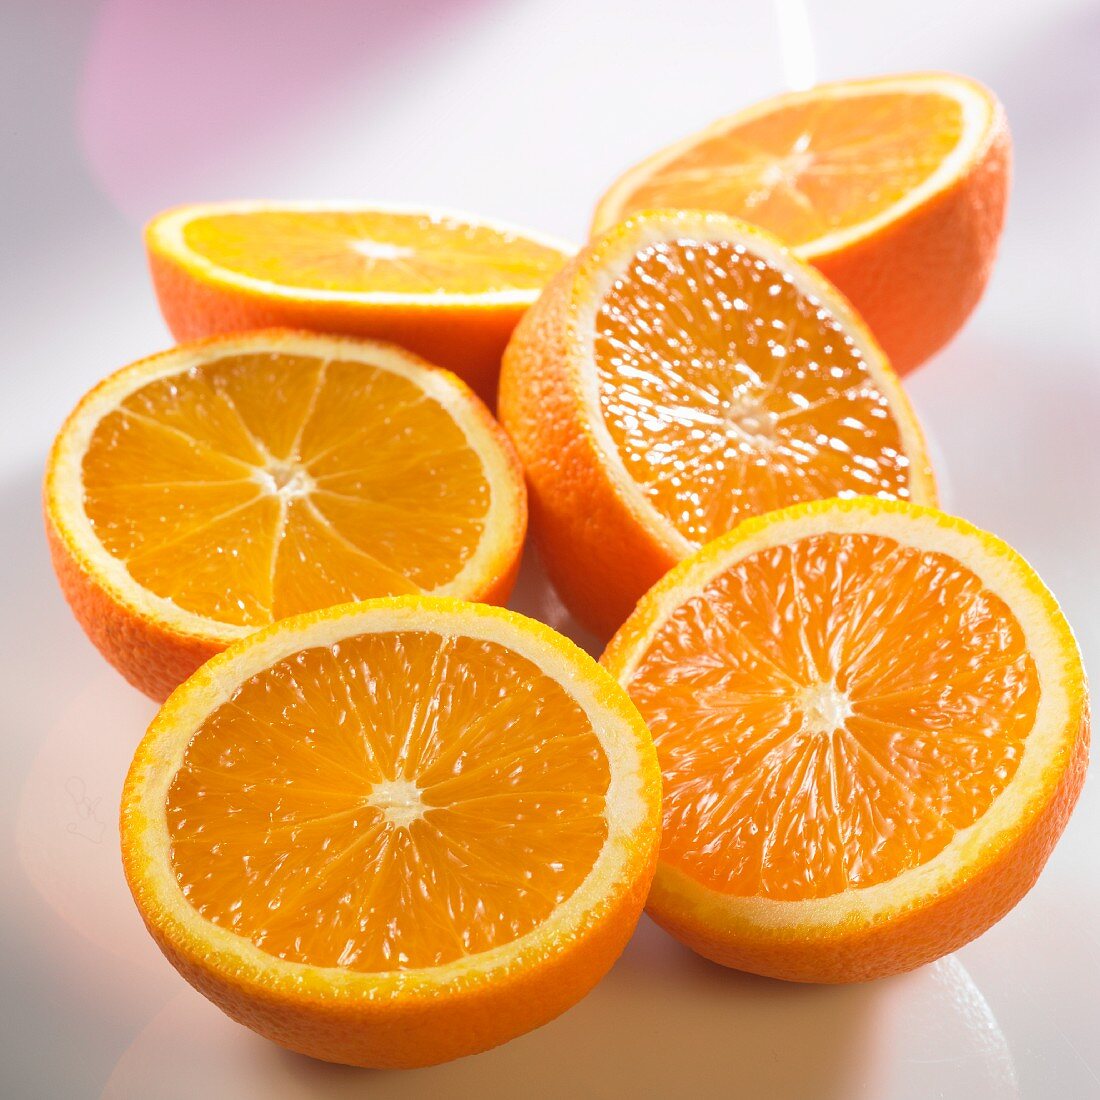 Six orange halves